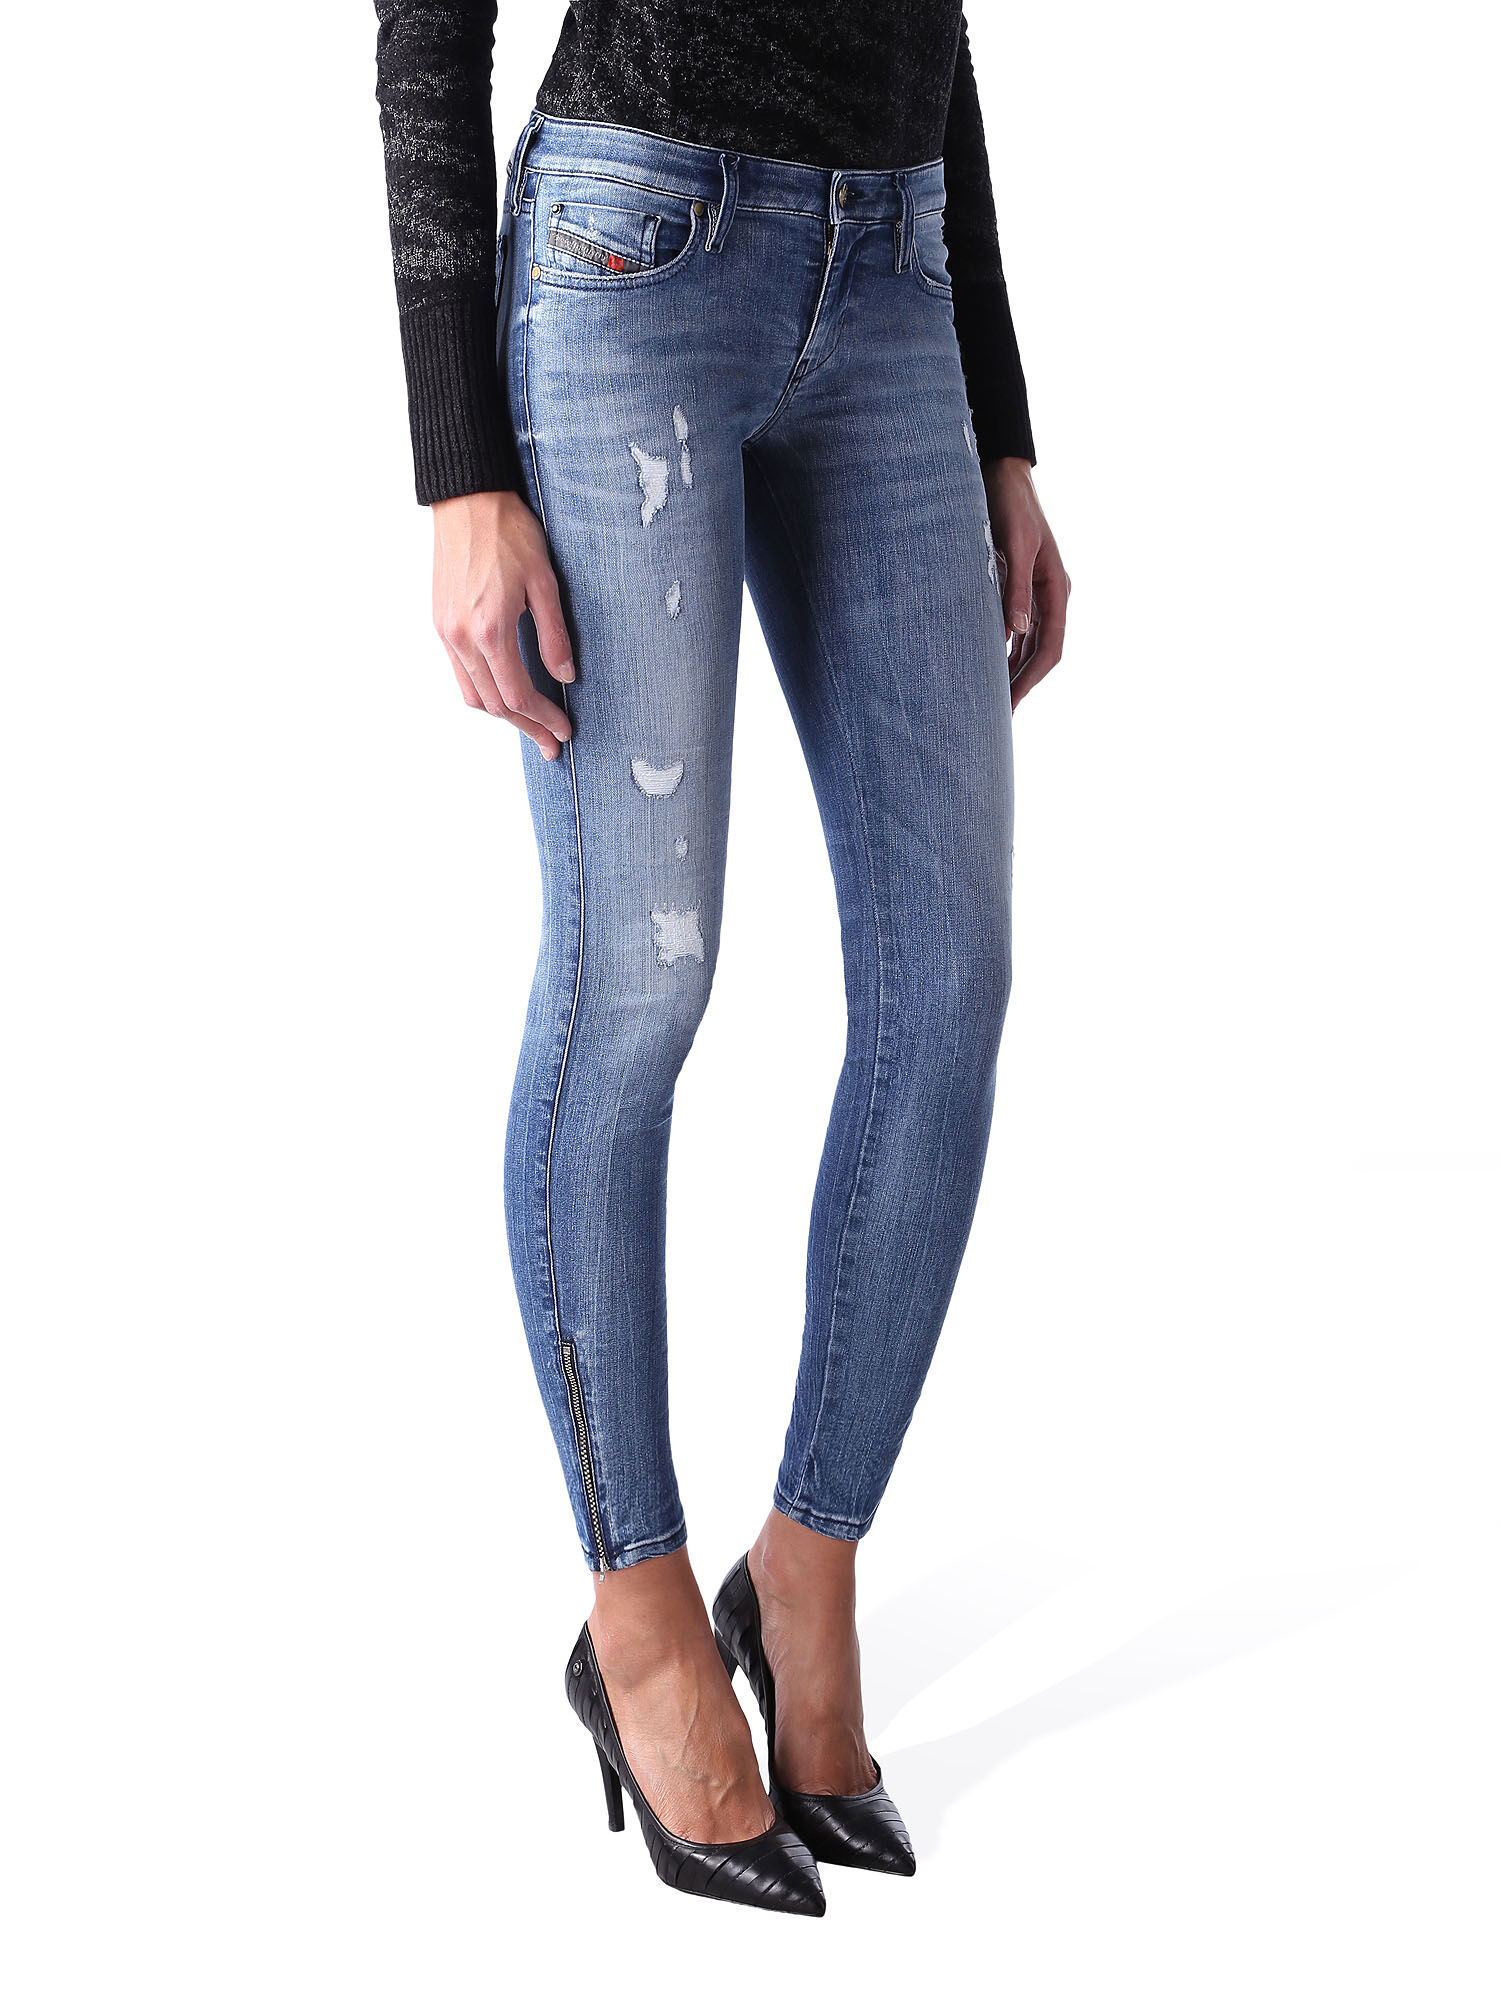 SKINZEE-LOW-ZIP 0847U Super skinny Jeans Woman | Diesel Online Store